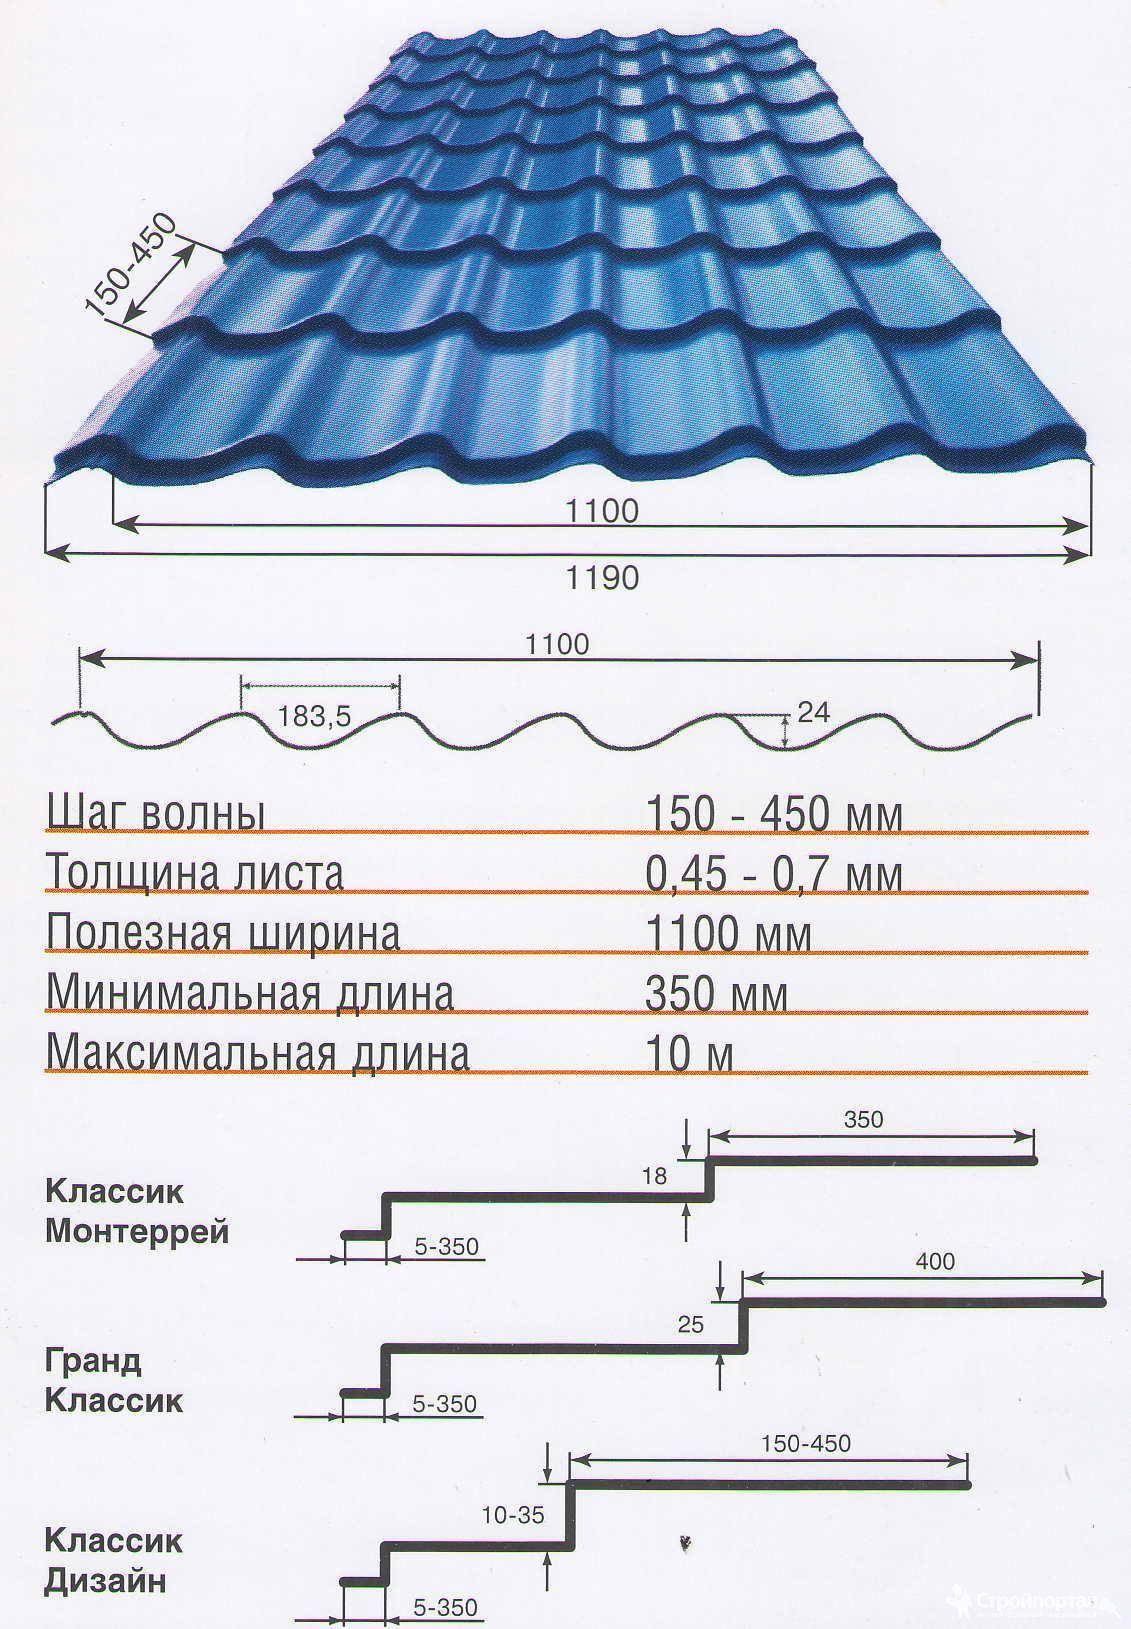 Размеры и стоимость металлочерепицы для крыши